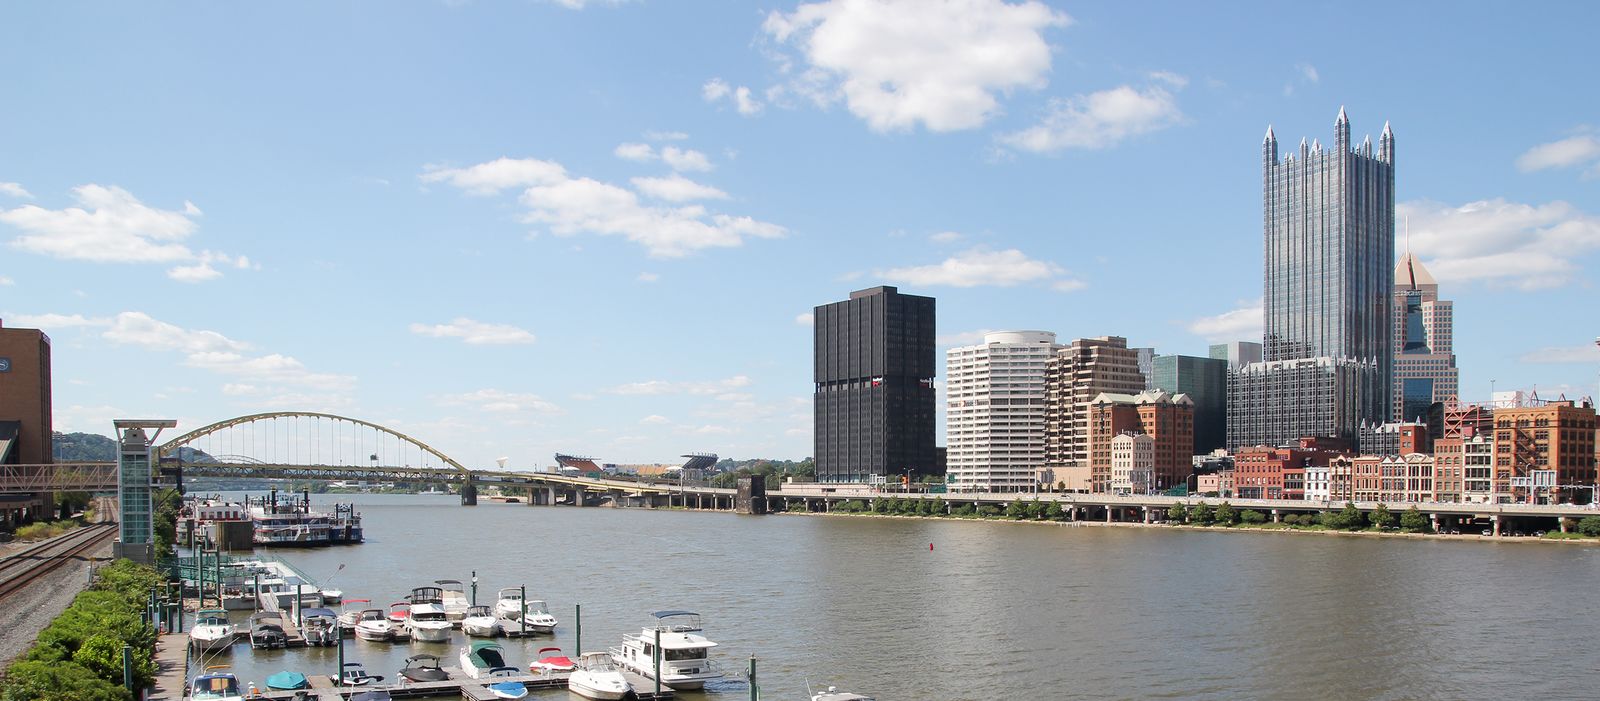 Ausblick auf den Monongahela River und die Skyline von Pittsburgh, Pennsylvania